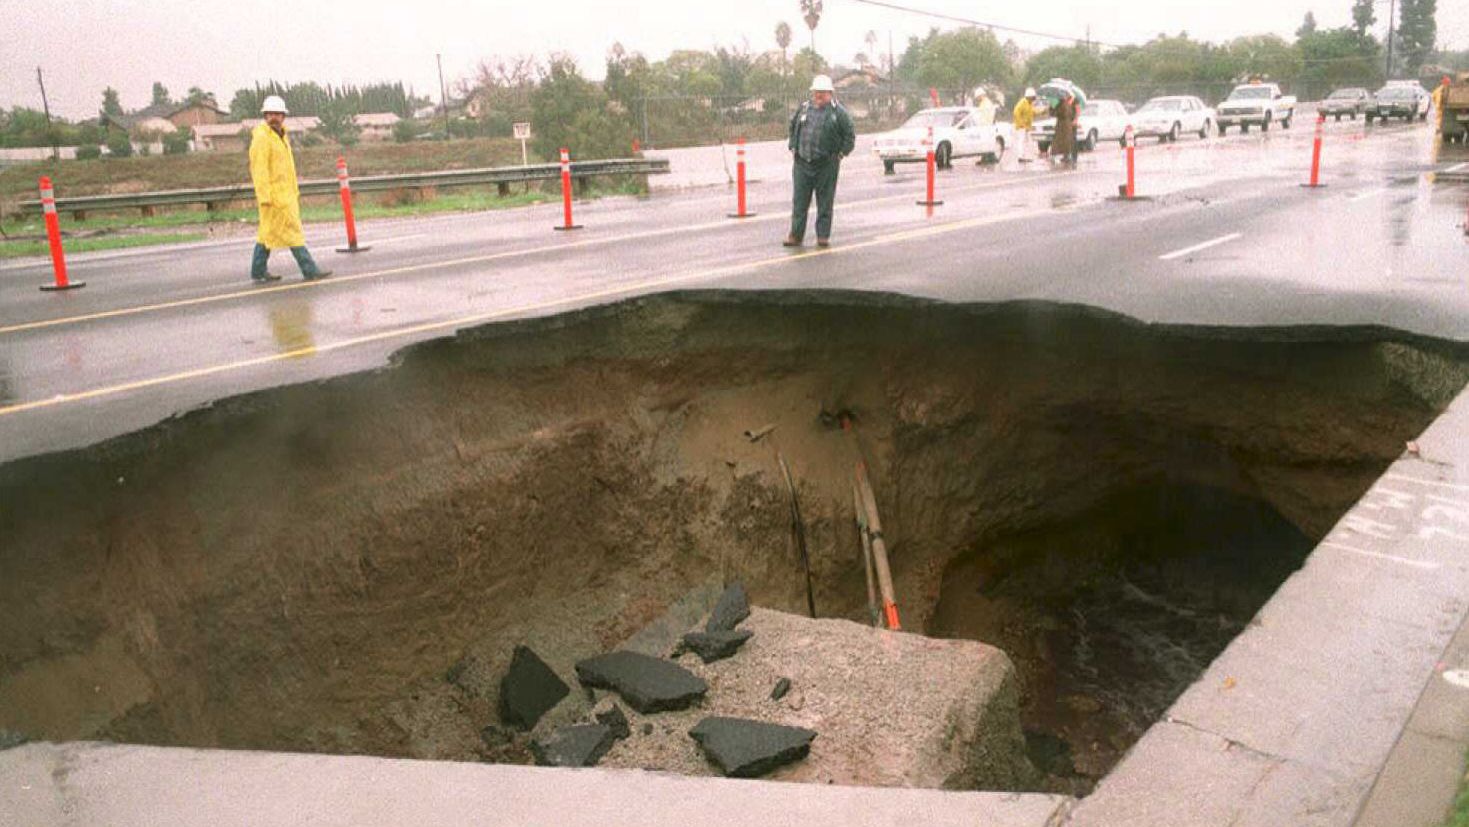 how sinkholes happen